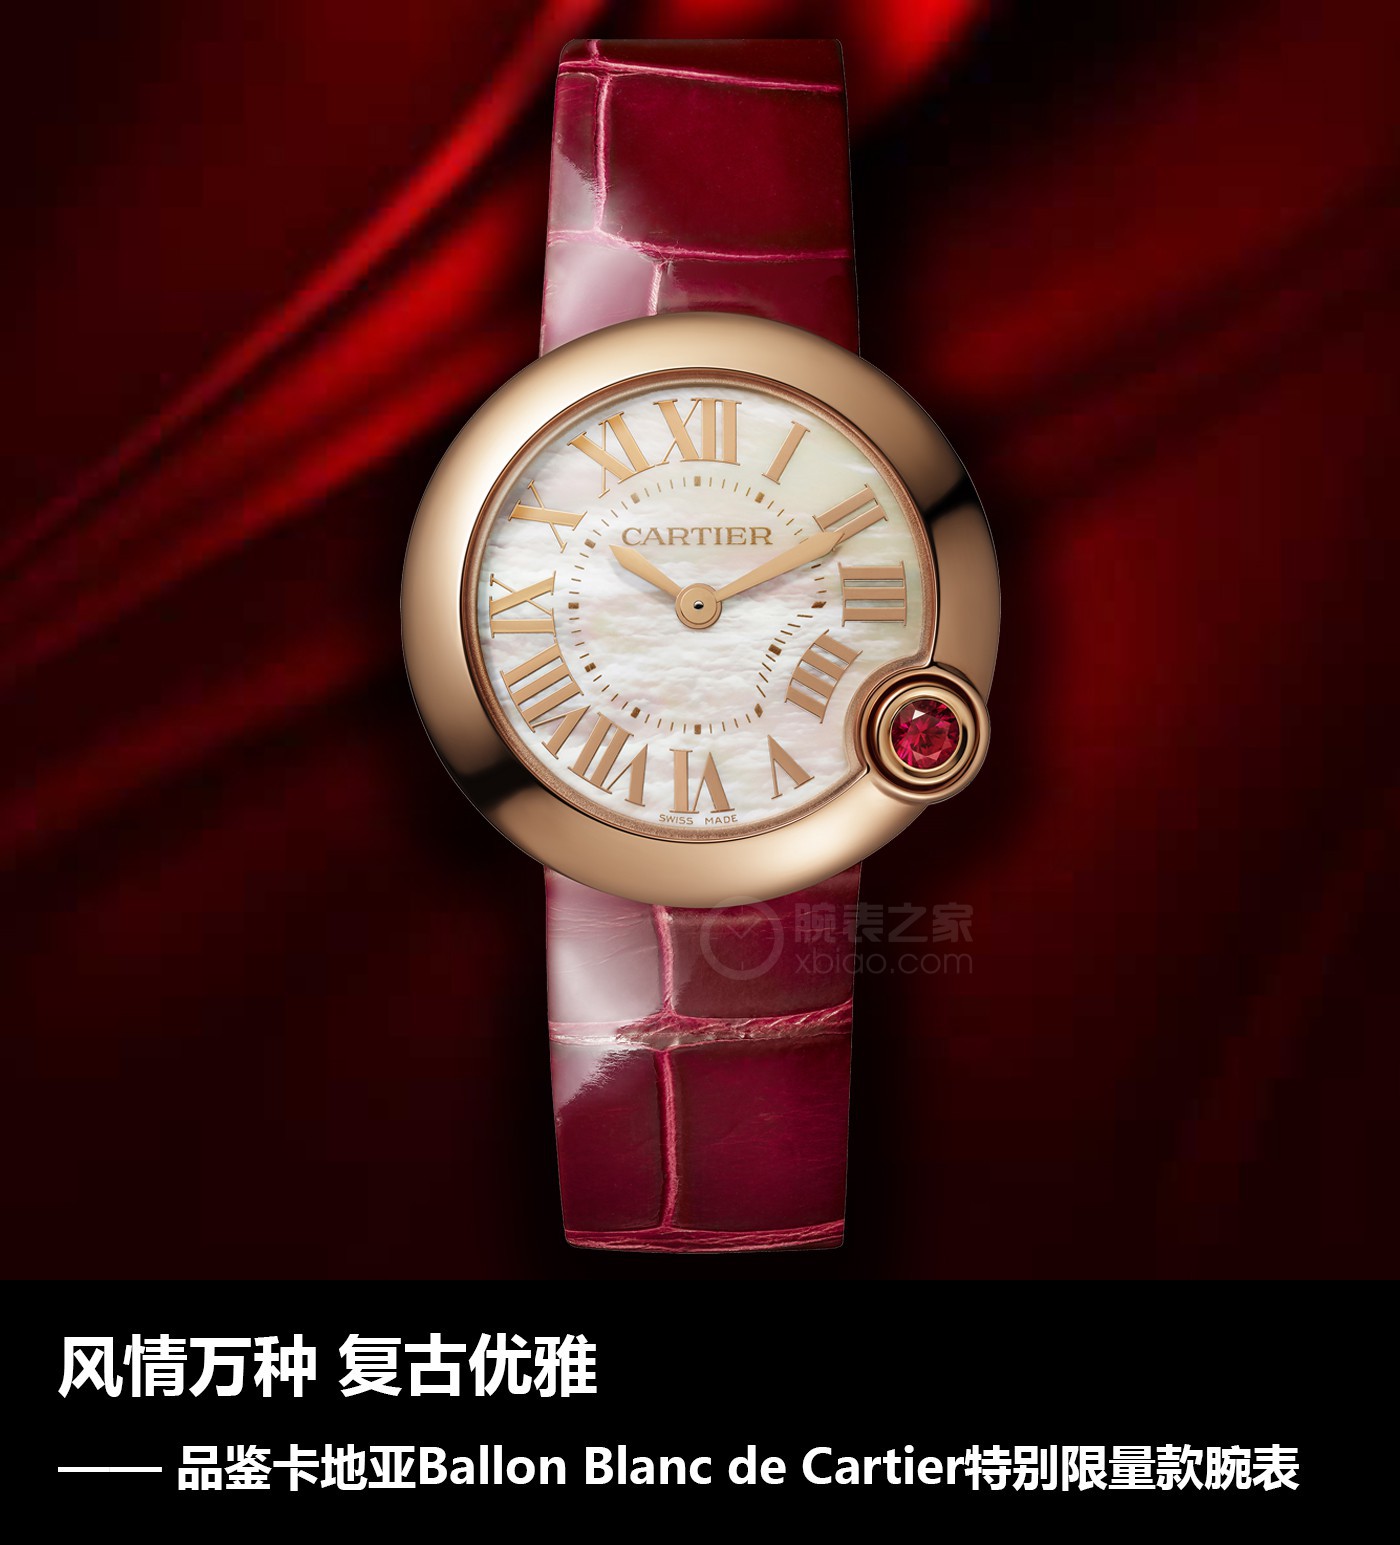 述圣言]万种风情 复古时尚雅致 品评卡地亚Ballon Blanc de Cartier尤其限量款腕表